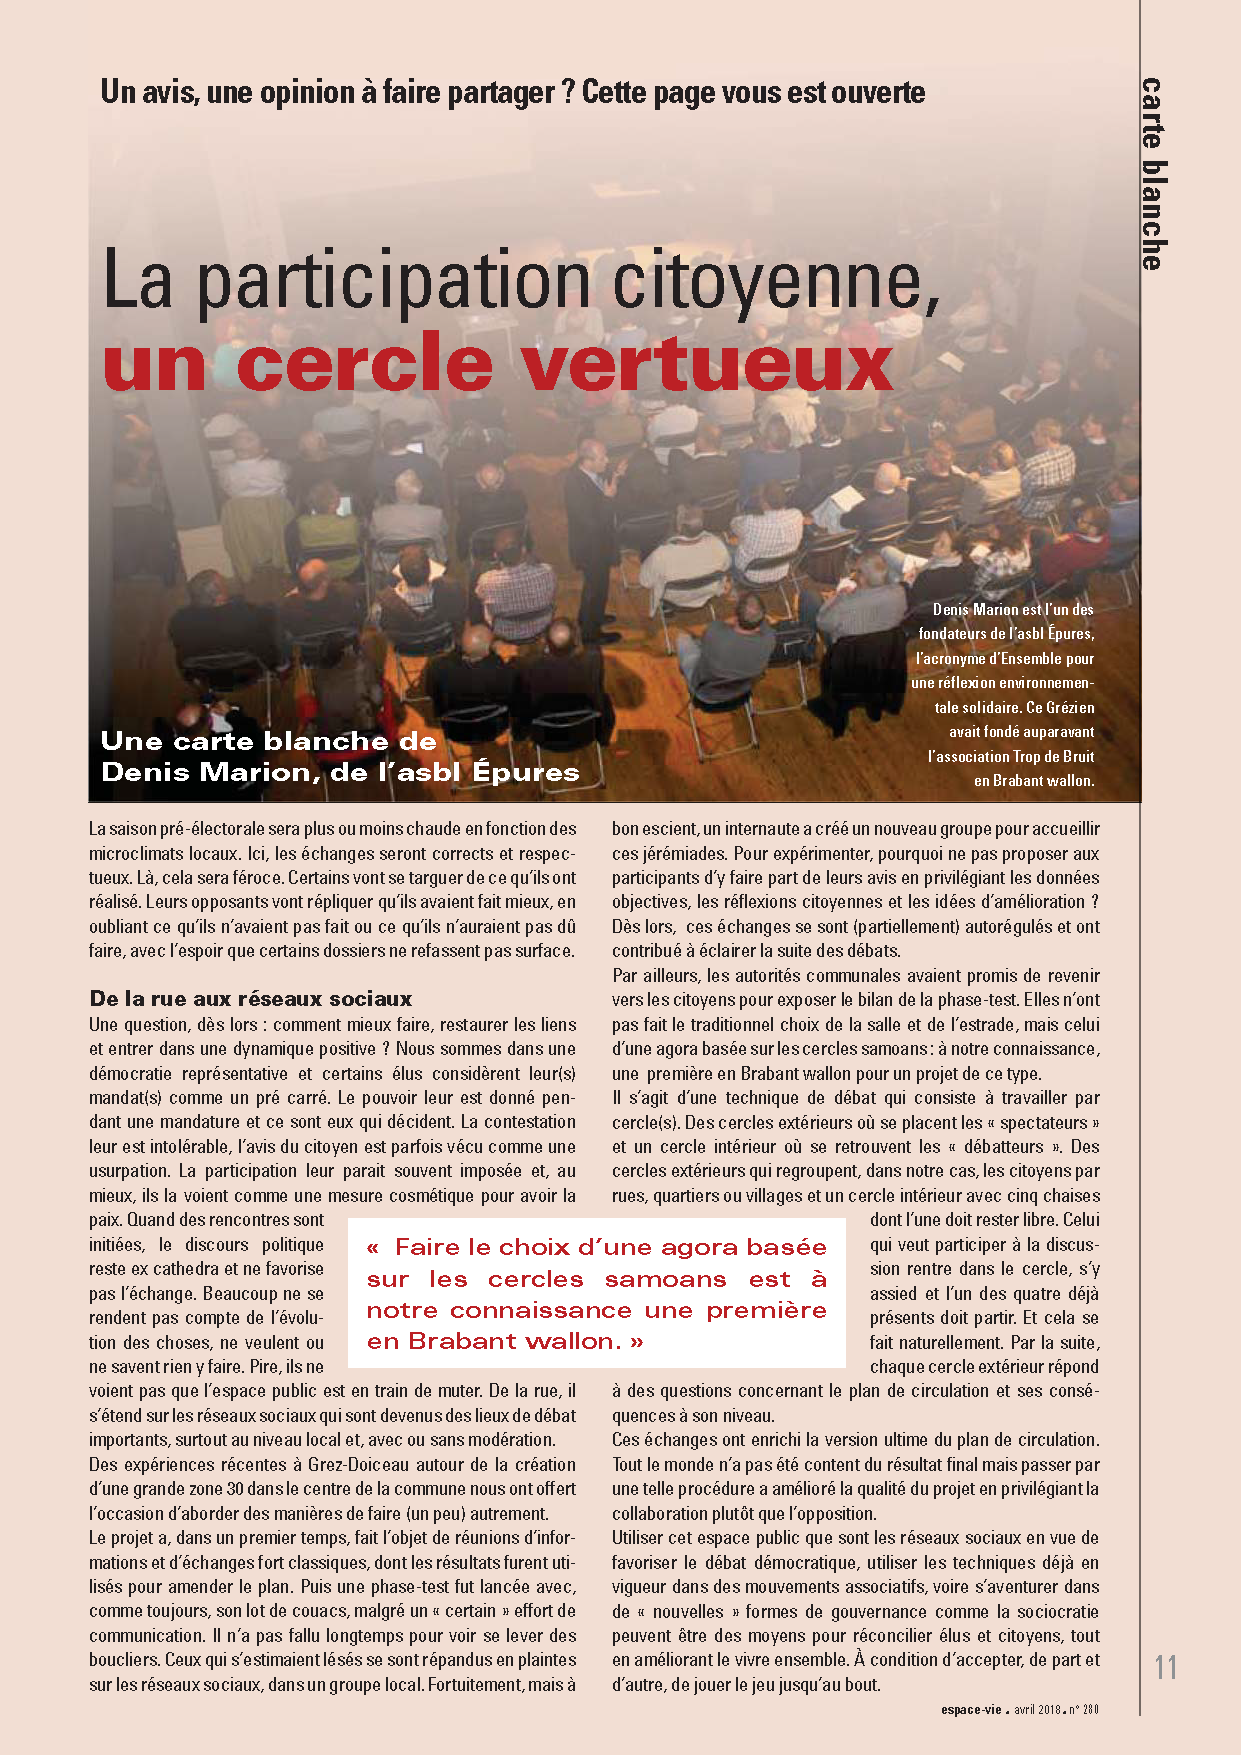 La participation citoyenne, un cercle vertueux -- 04/04/18